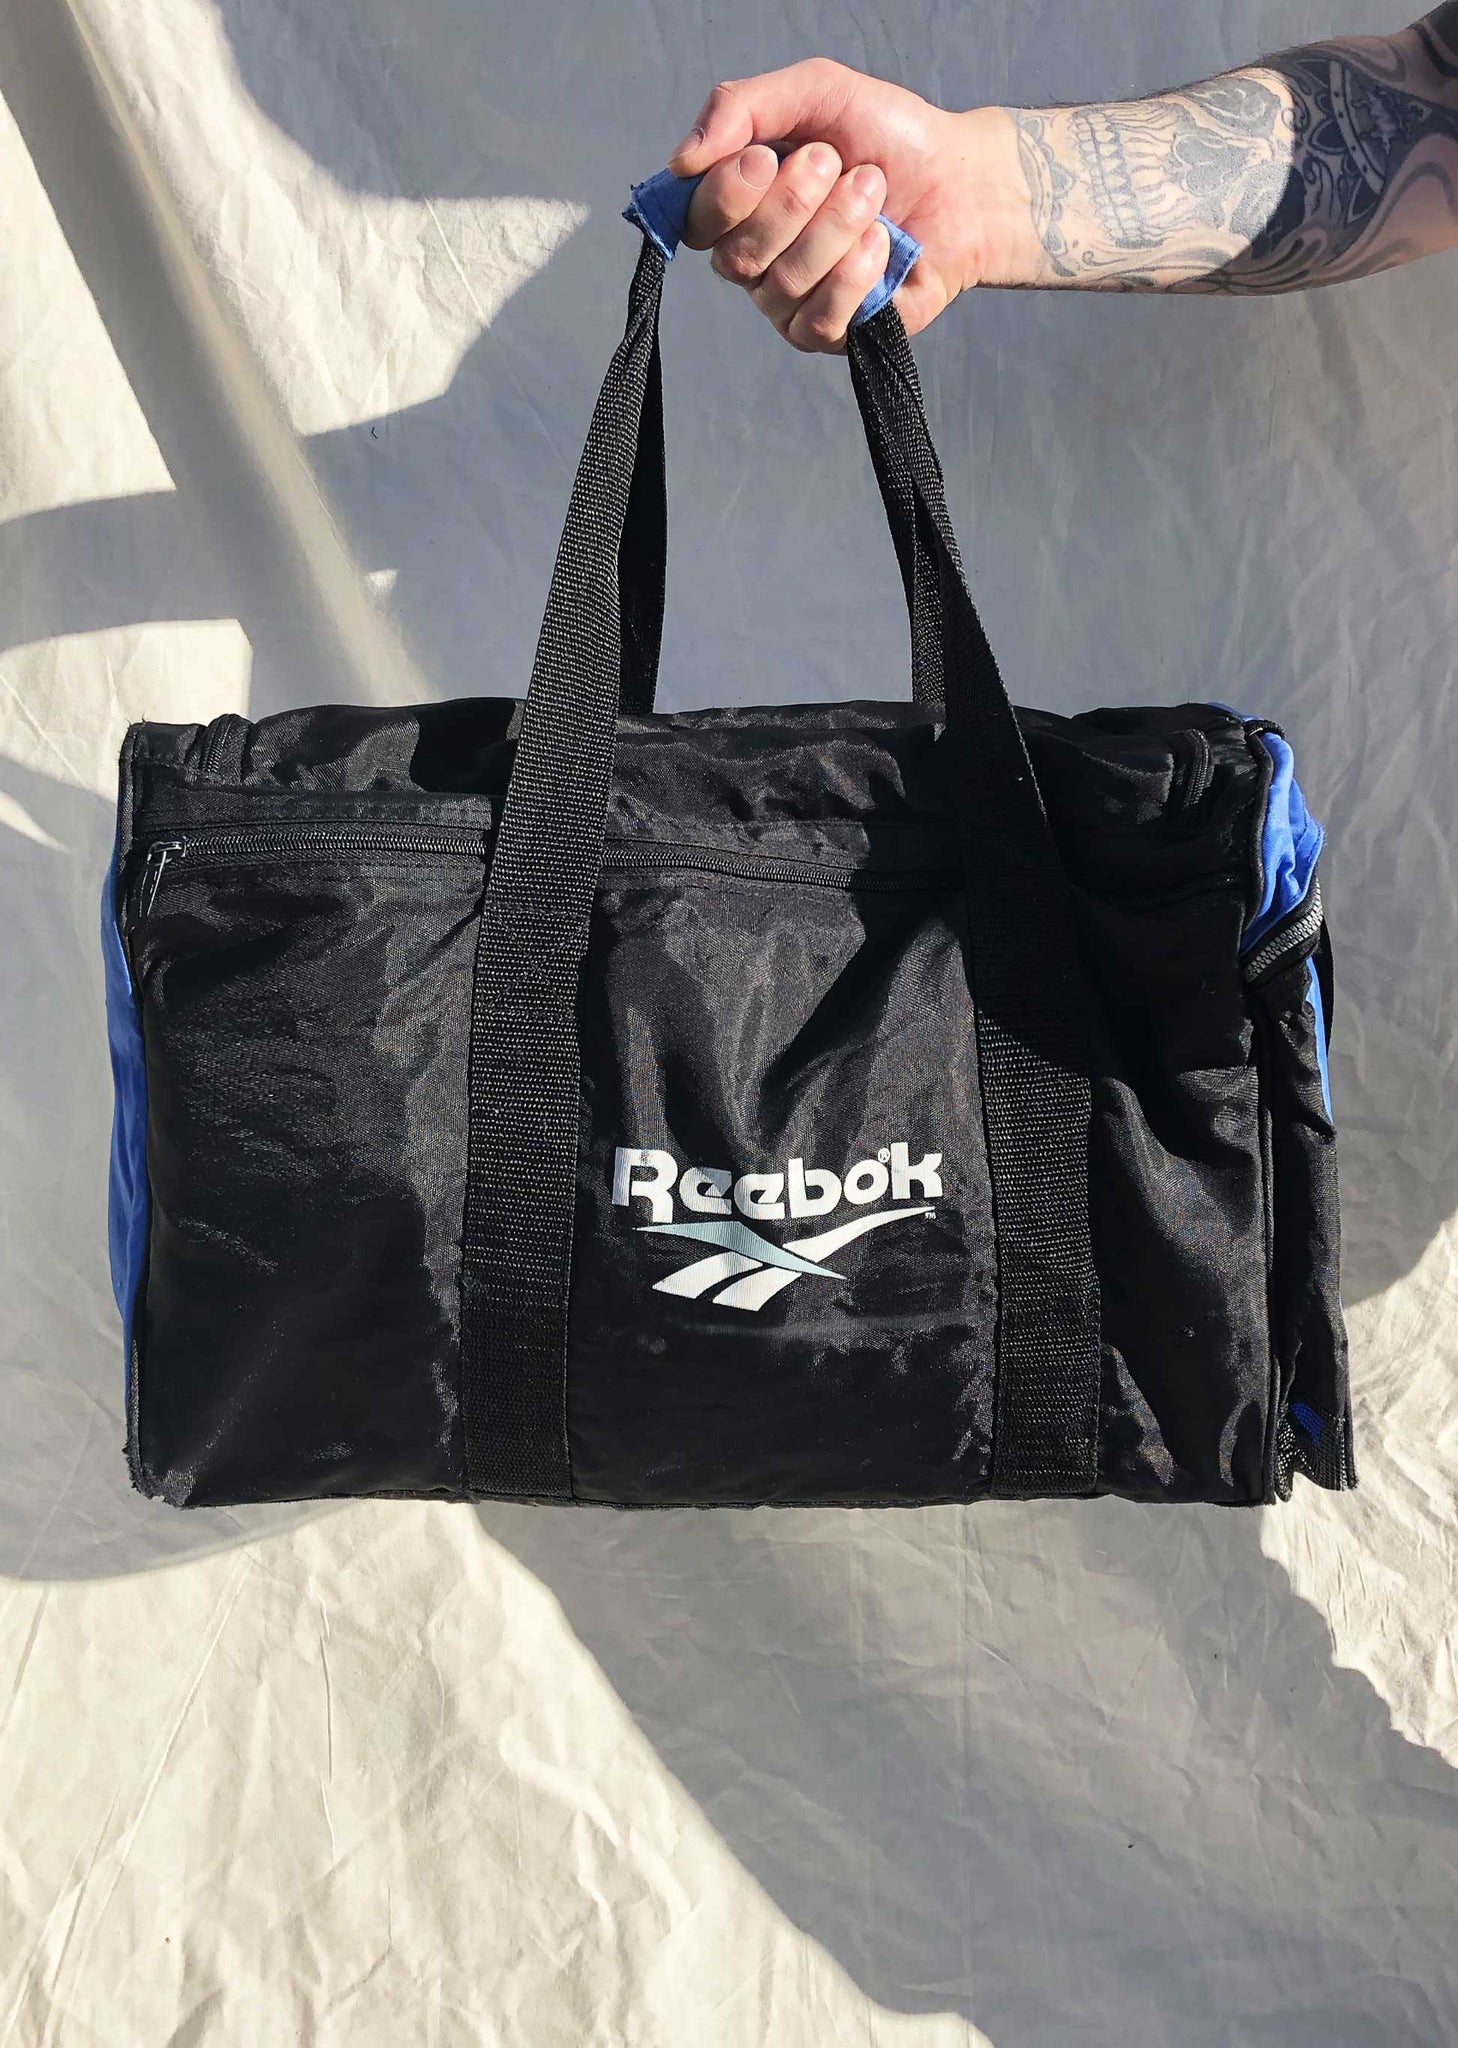 Reebok Zipper Gym bag | eBay